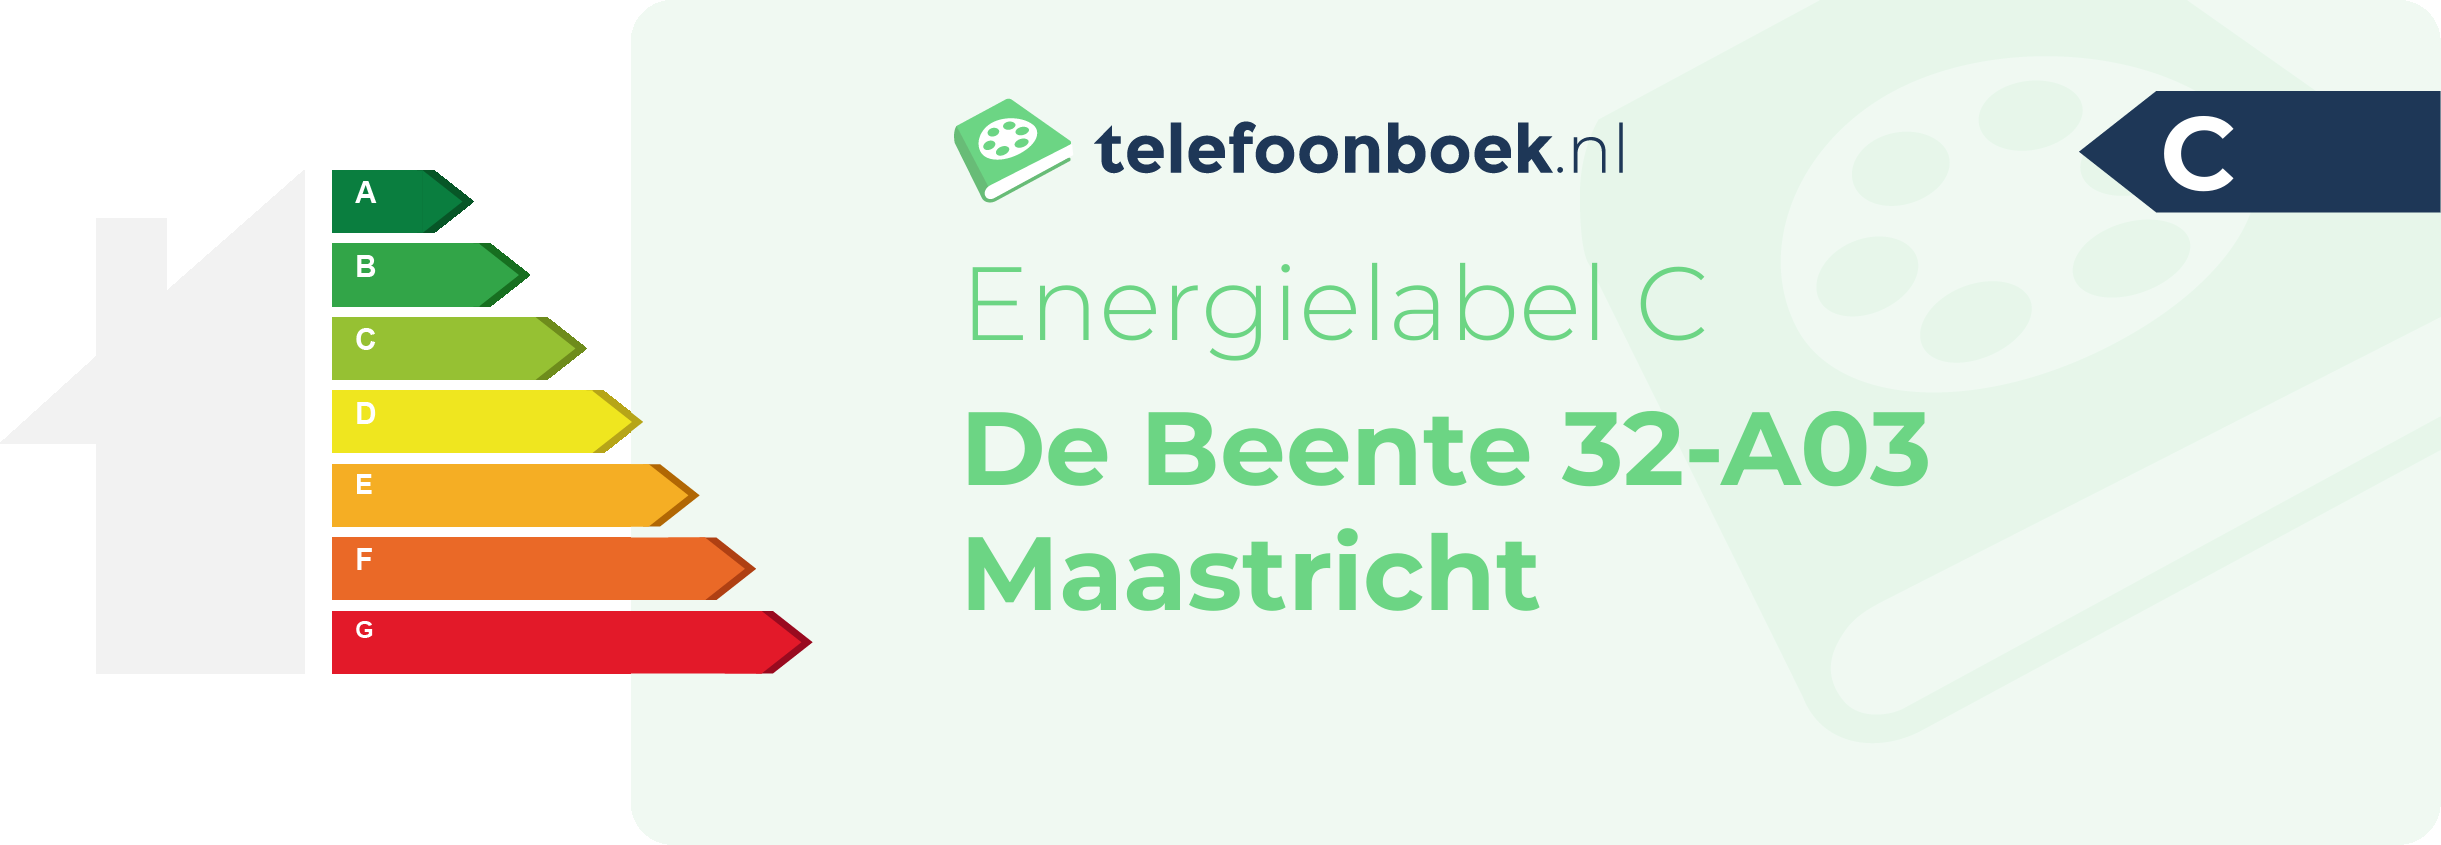 Energielabel De Beente 32-A03 Maastricht